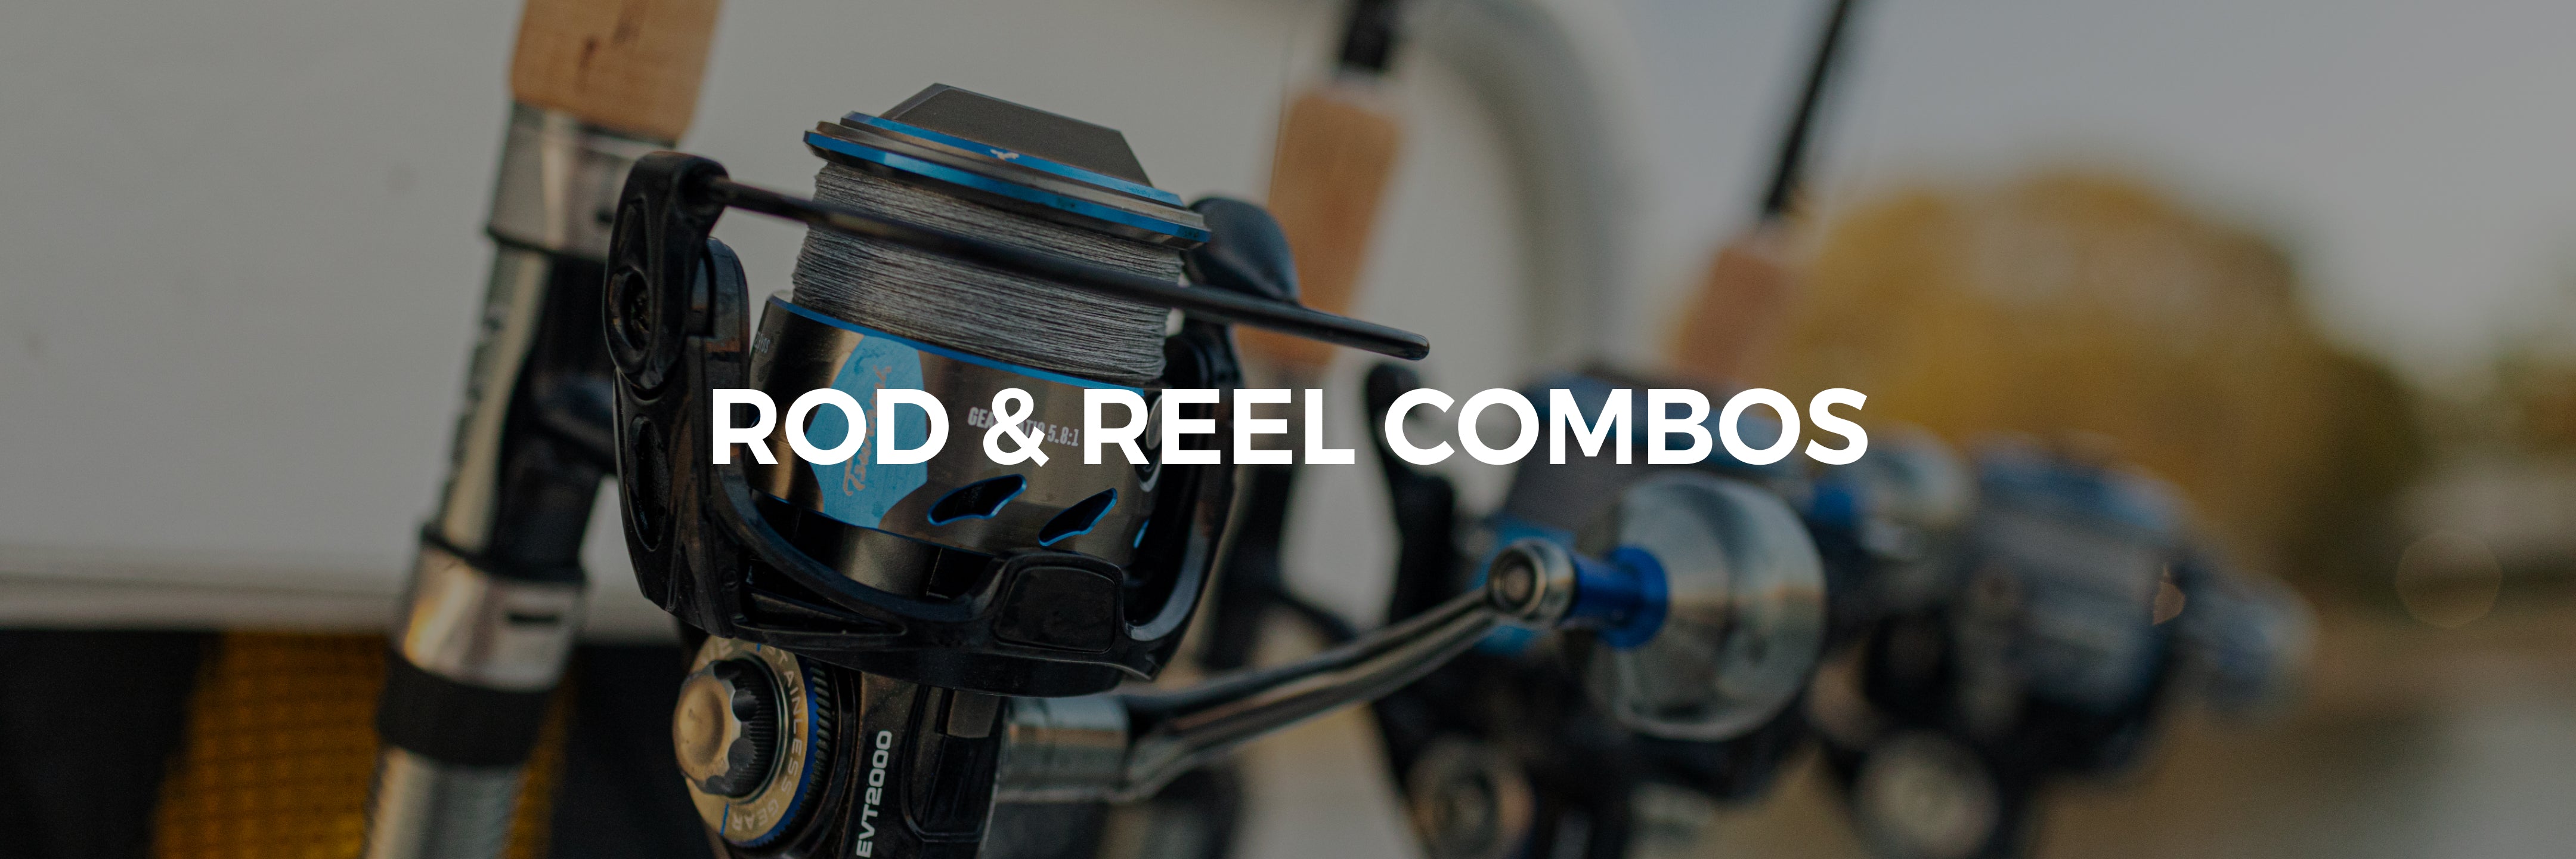 Rod & Reel Combos  Tsunami Fishing & Tackle